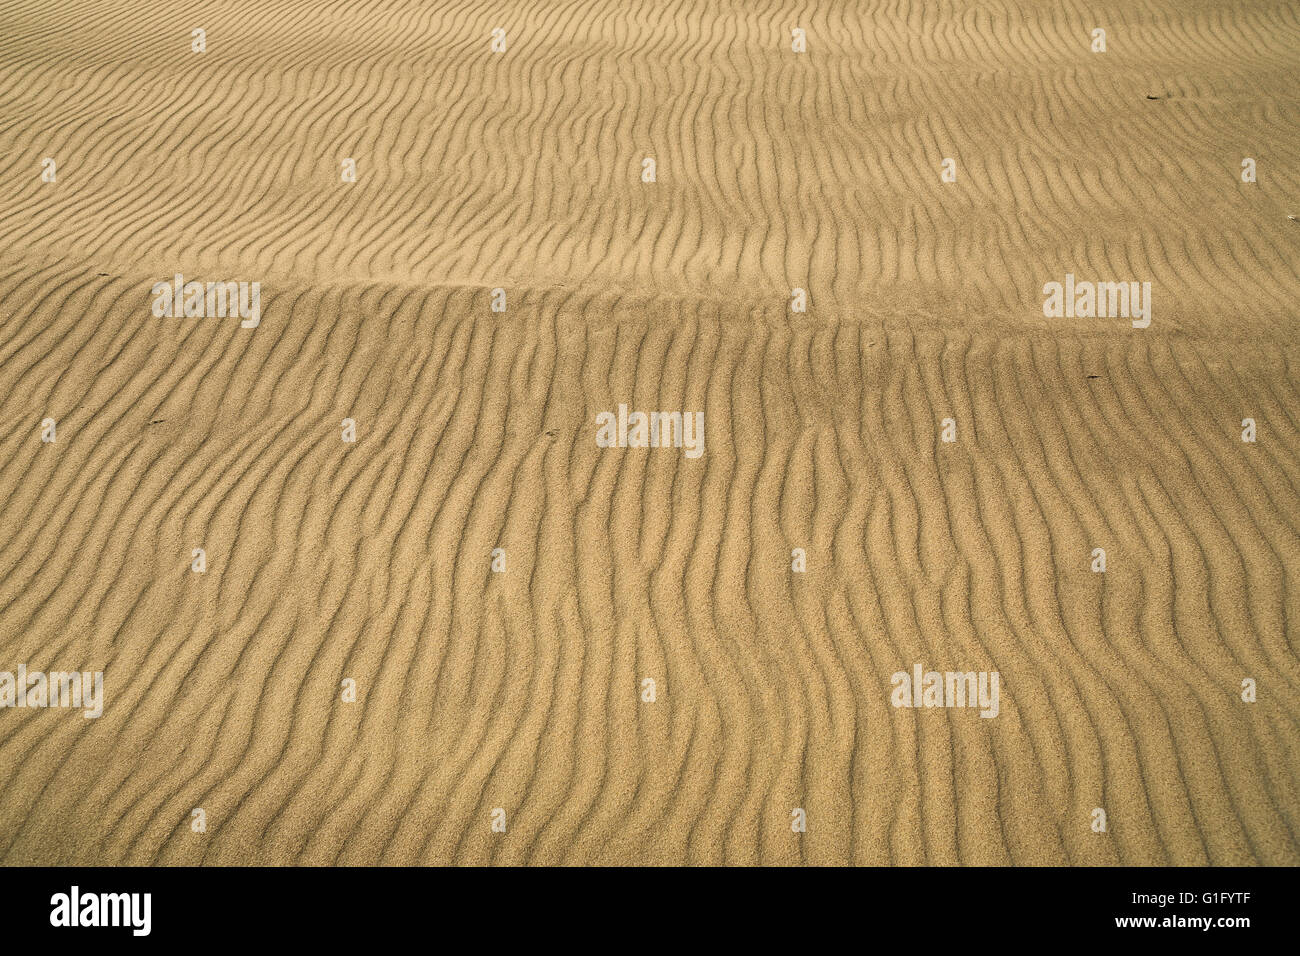 ein Detail der Wind geblasen Sand, gewellt und mit Rillen.  Ein einzigartiges Muster ähnlich wie ein Fingerabdruck Stockfoto